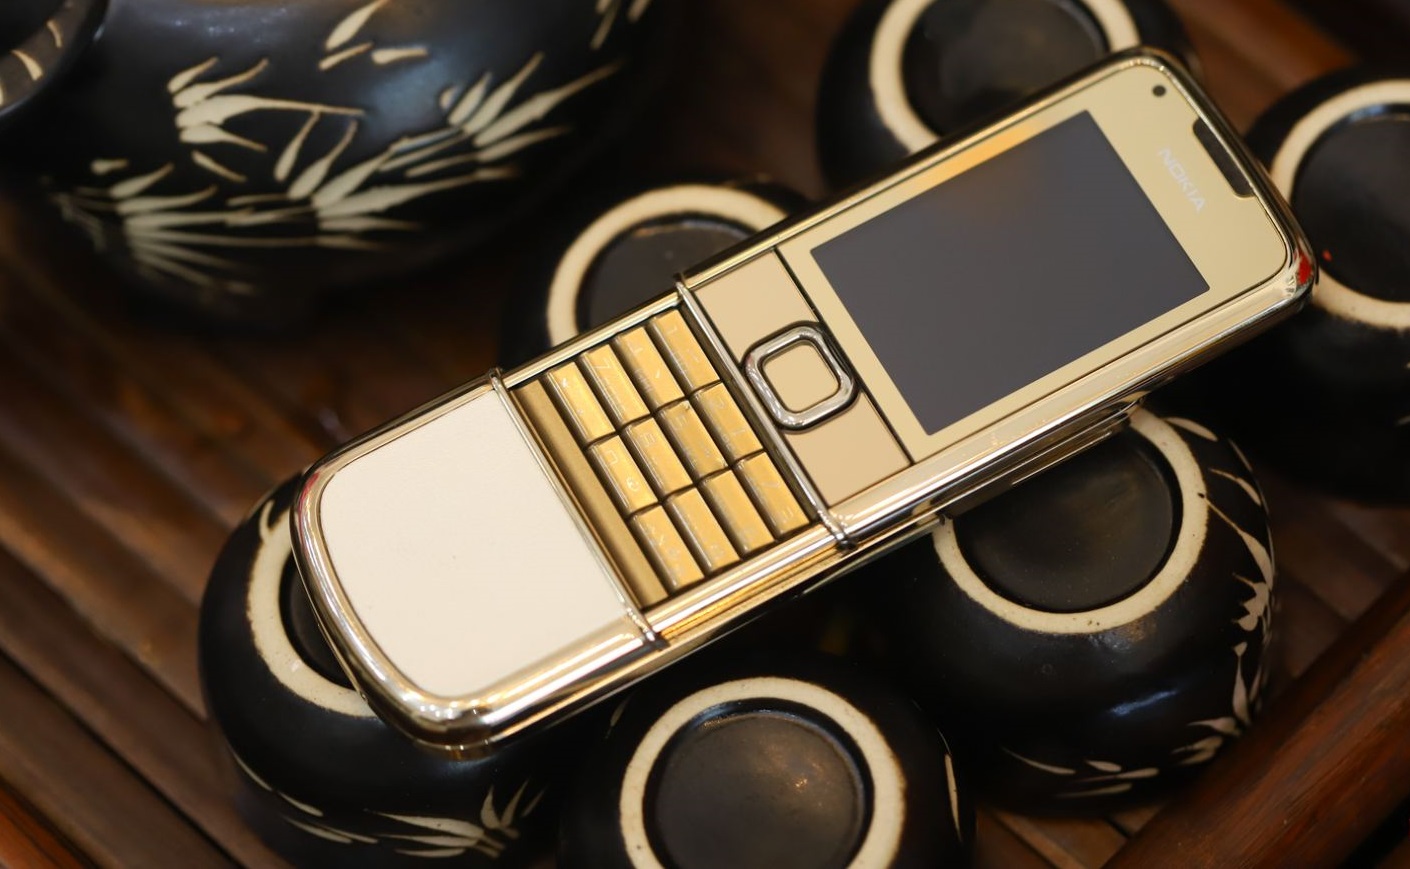 Nokia 8800 Gold Arte vẻ đẹp khẳng định vị thế hoàng gia | Hoàng Luxury